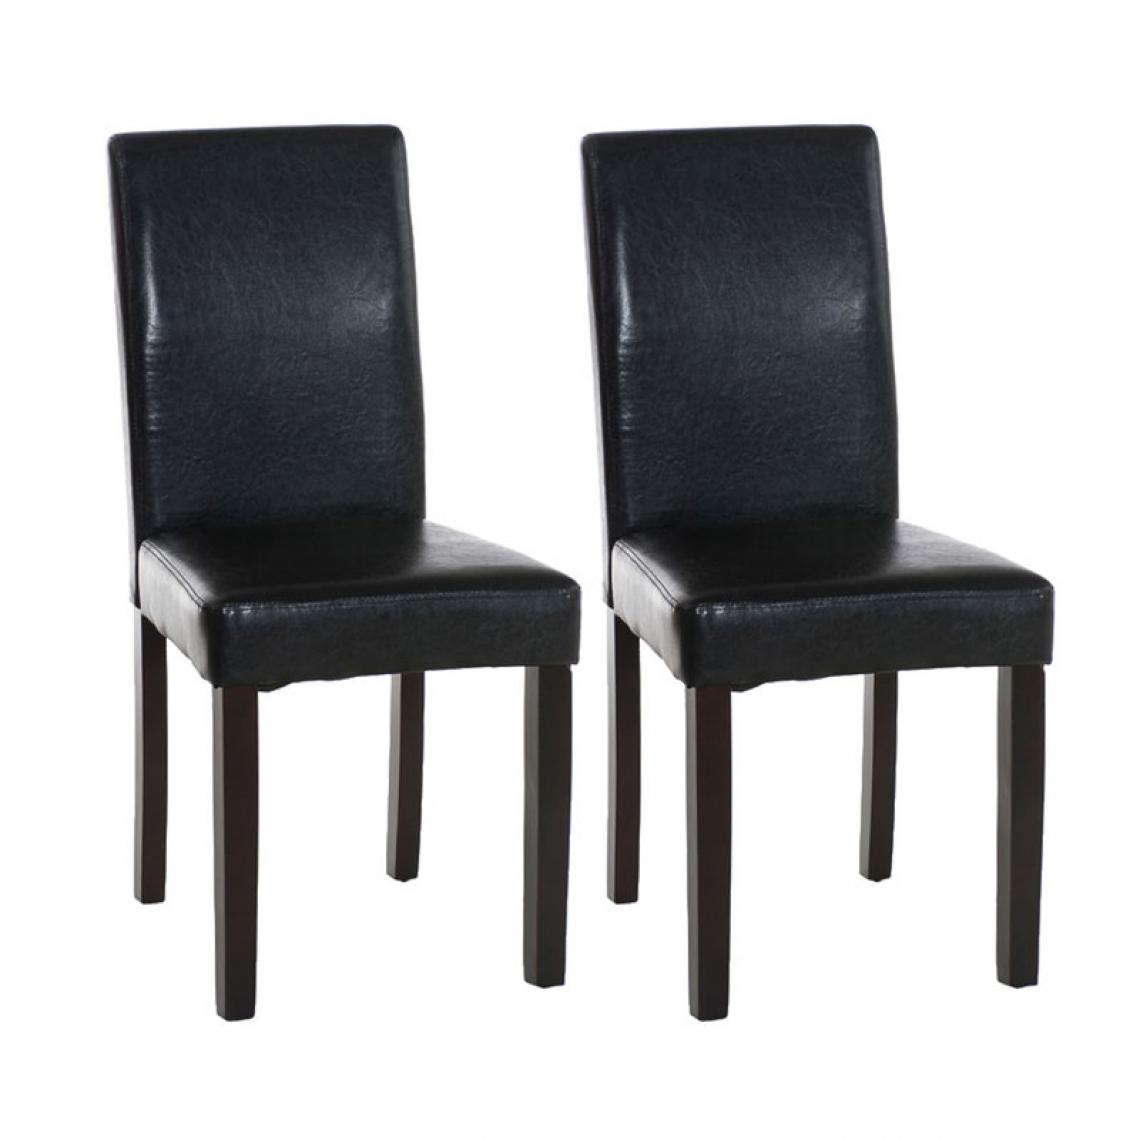 Icaverne - Splendide Lot de 2 chaises de salle à manger Rabat marron foncé couleur noir - Chaises